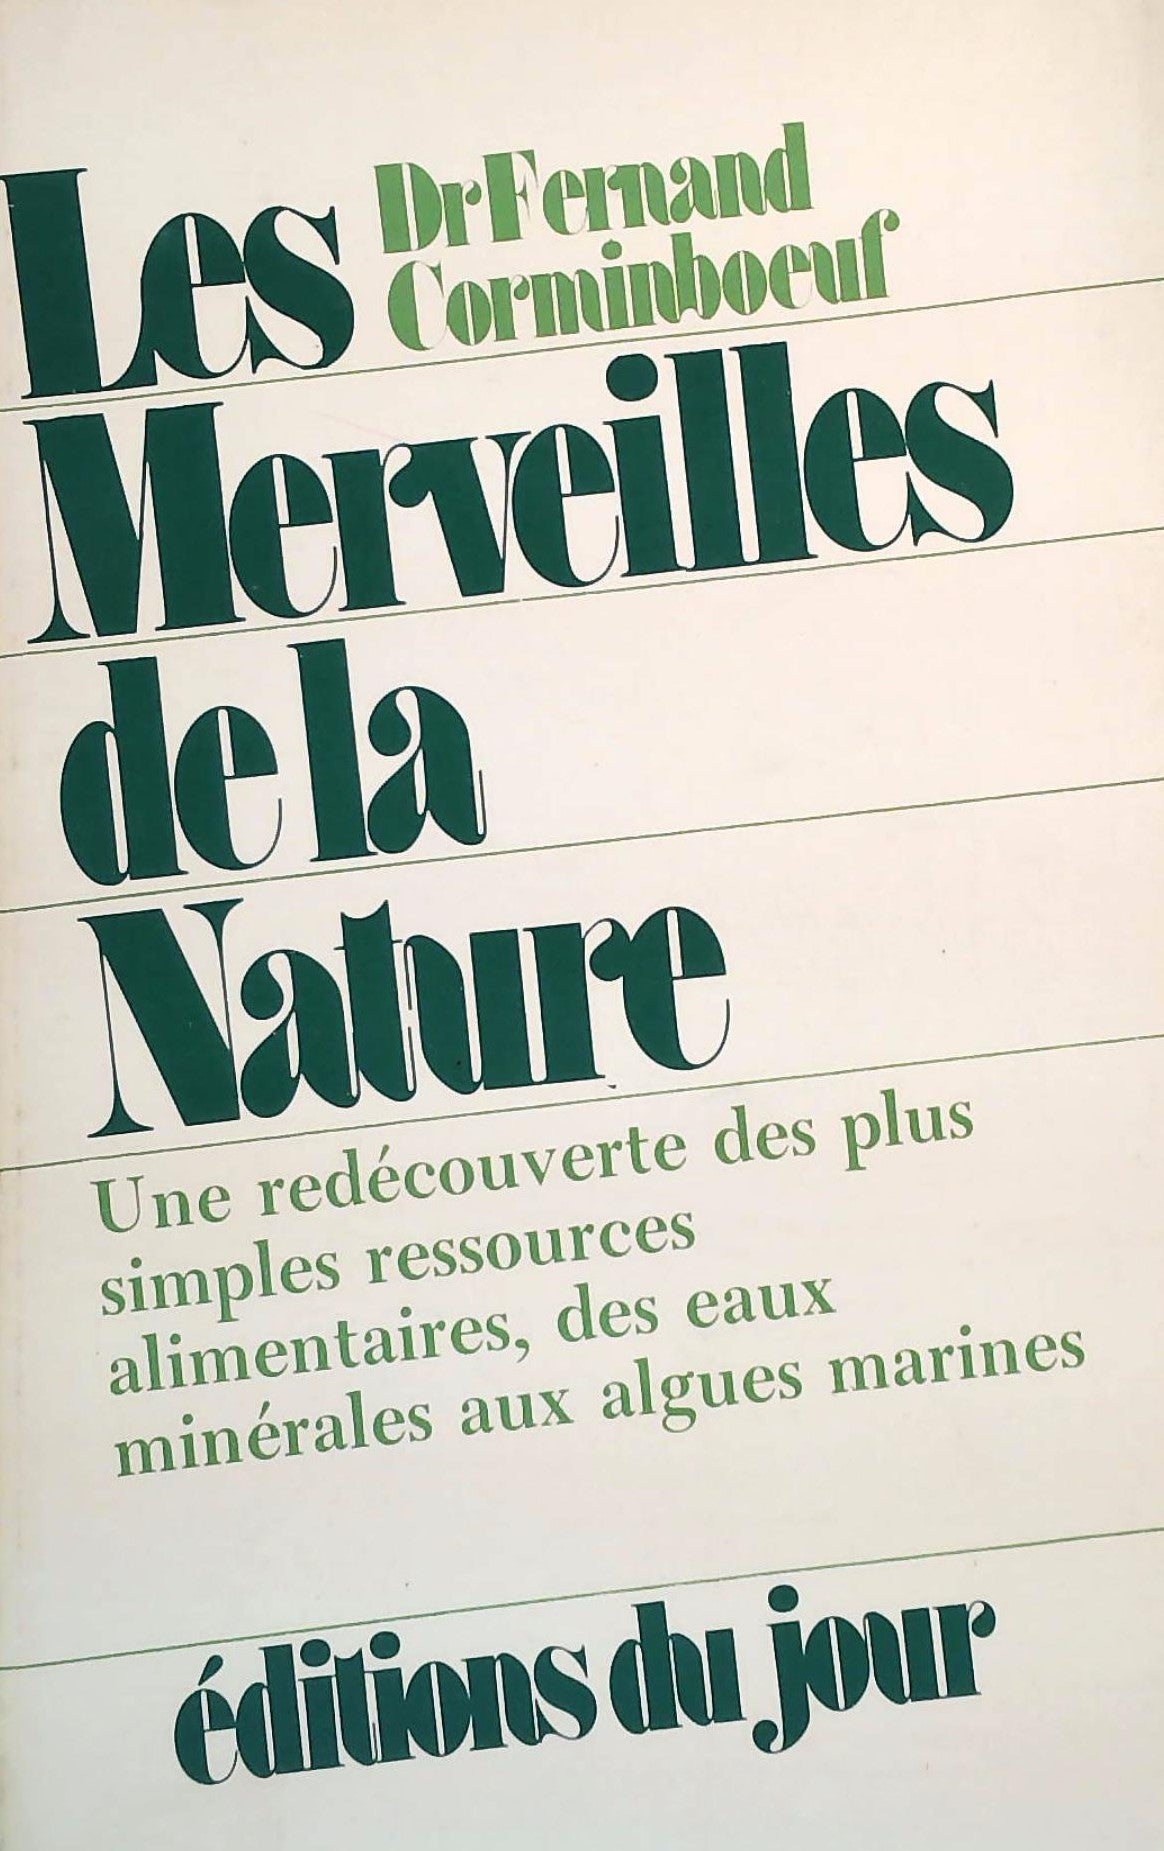 Livre ISBN  Les merveilles de la nature : Une redécouverte des plus simples ressources alimentaires, des eaux minérales aux algues marines (Dr. Fernand Corminboeur)